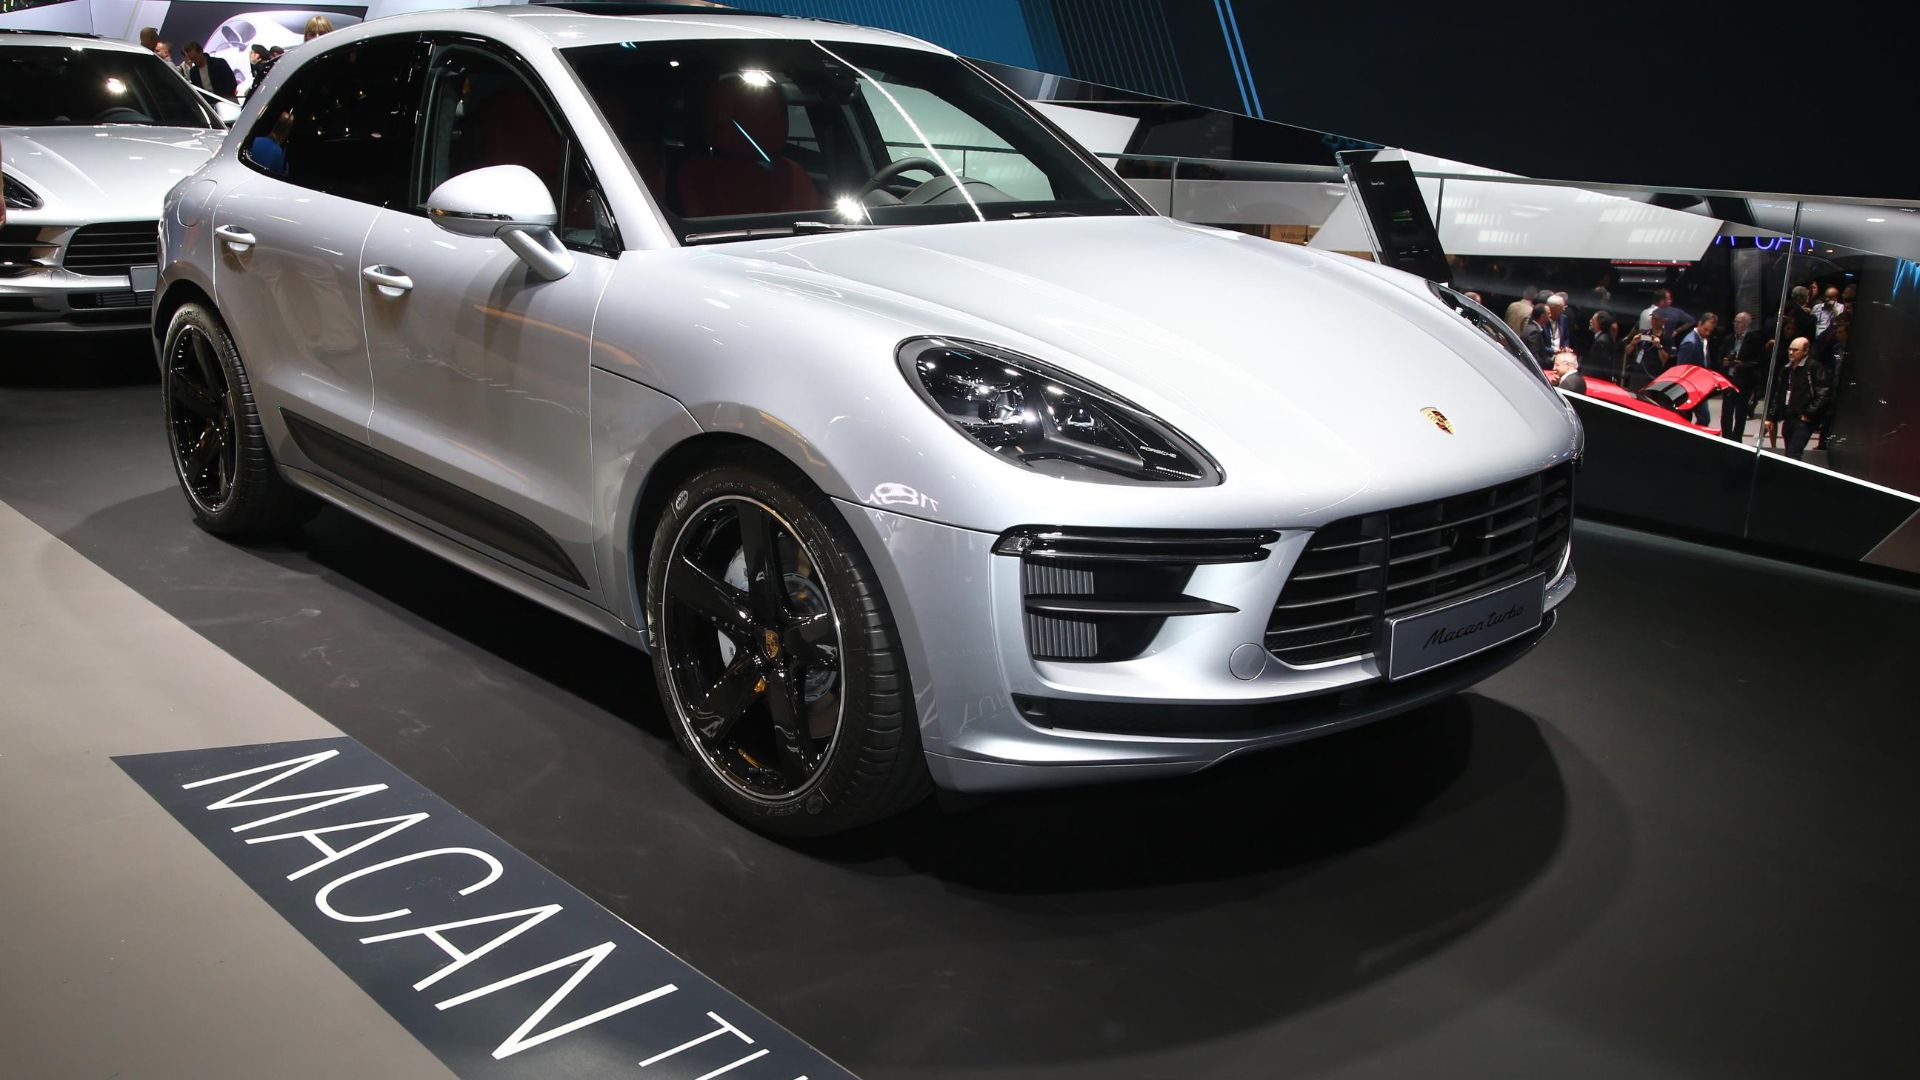 Porsche Taycan won't be profitable until 2023